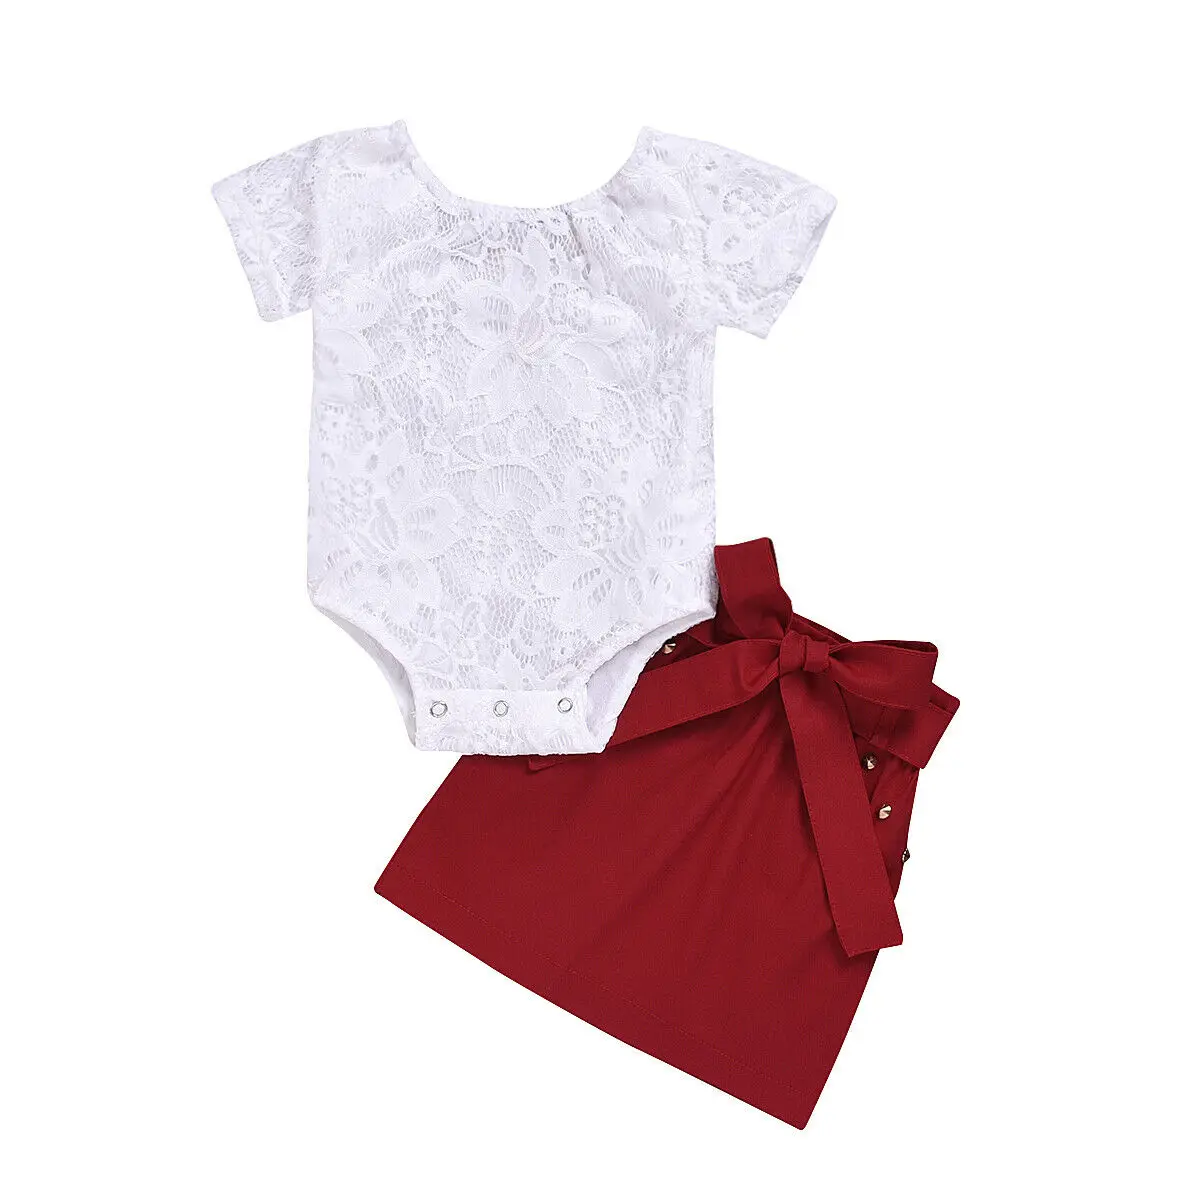 Г. Летняя одежда для малышей кружевной комбинезон с короткими рукавами для новорожденных девочек, пояс на завязках, юбка на бедрах комплект одежды из 2 предметов, От 6 месяцев до 4 лет - Цвет: Красный